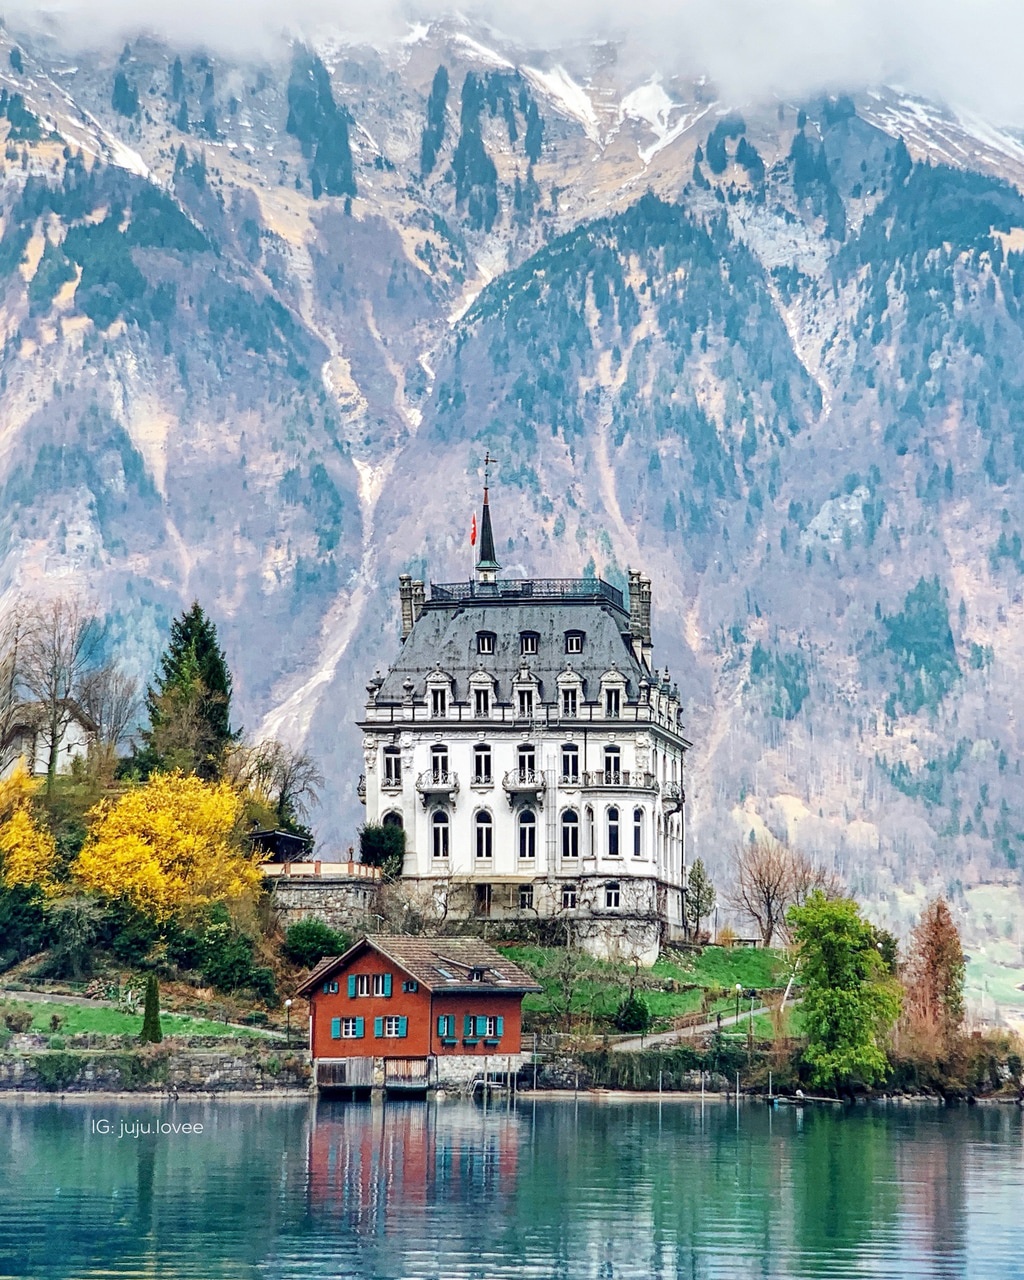 Nếu bạn đam mê làm phim và muốn tìm kiếm những địa điểm quay trong bối cảnh thiên nhiên hùng vĩ, lịch sử và văn hóa, Thụy Sĩ sẽ là sự lựa chọn hoàn hảo cho bạn. Hãy khám phá những địa điểm quay phim tuyệt vời tại Thụy Sĩ và đưa ra những bộ phim tuyệt vời.